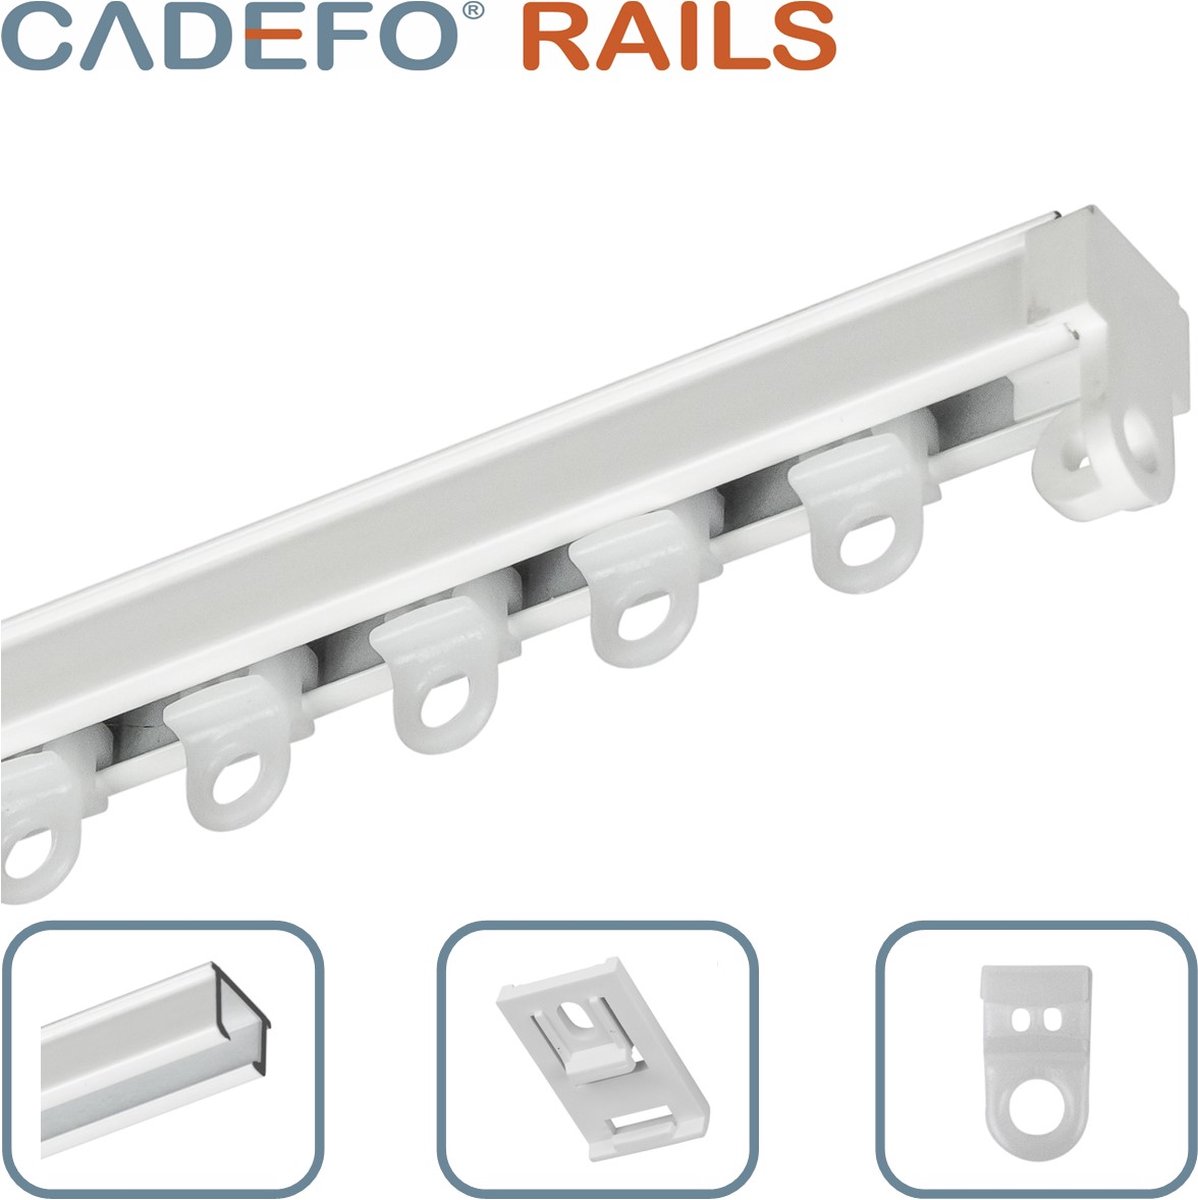 CADEFO RAILS (301 - 350 cm) Gordijnrails - Compleet op maat! - UIT 1 STUK - Leverbaar tot 6 meter - Plafondbevestiging - Lengte 347 cm